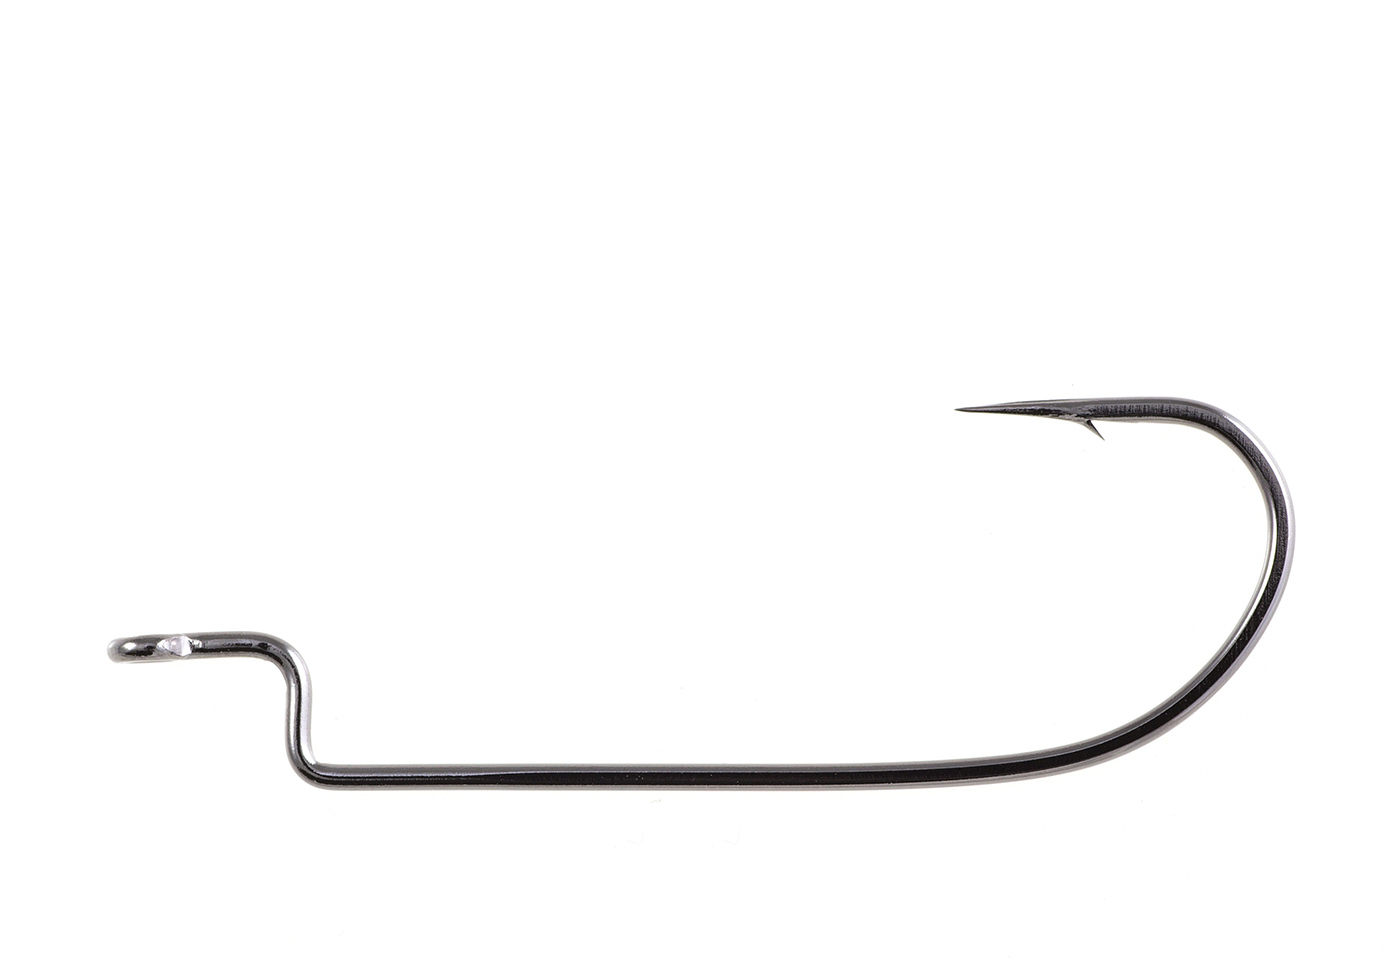 OWNER Offset Shank Worm Hooks 5101-121 Size 2/0-6 pack 90 degree bend shoulder 